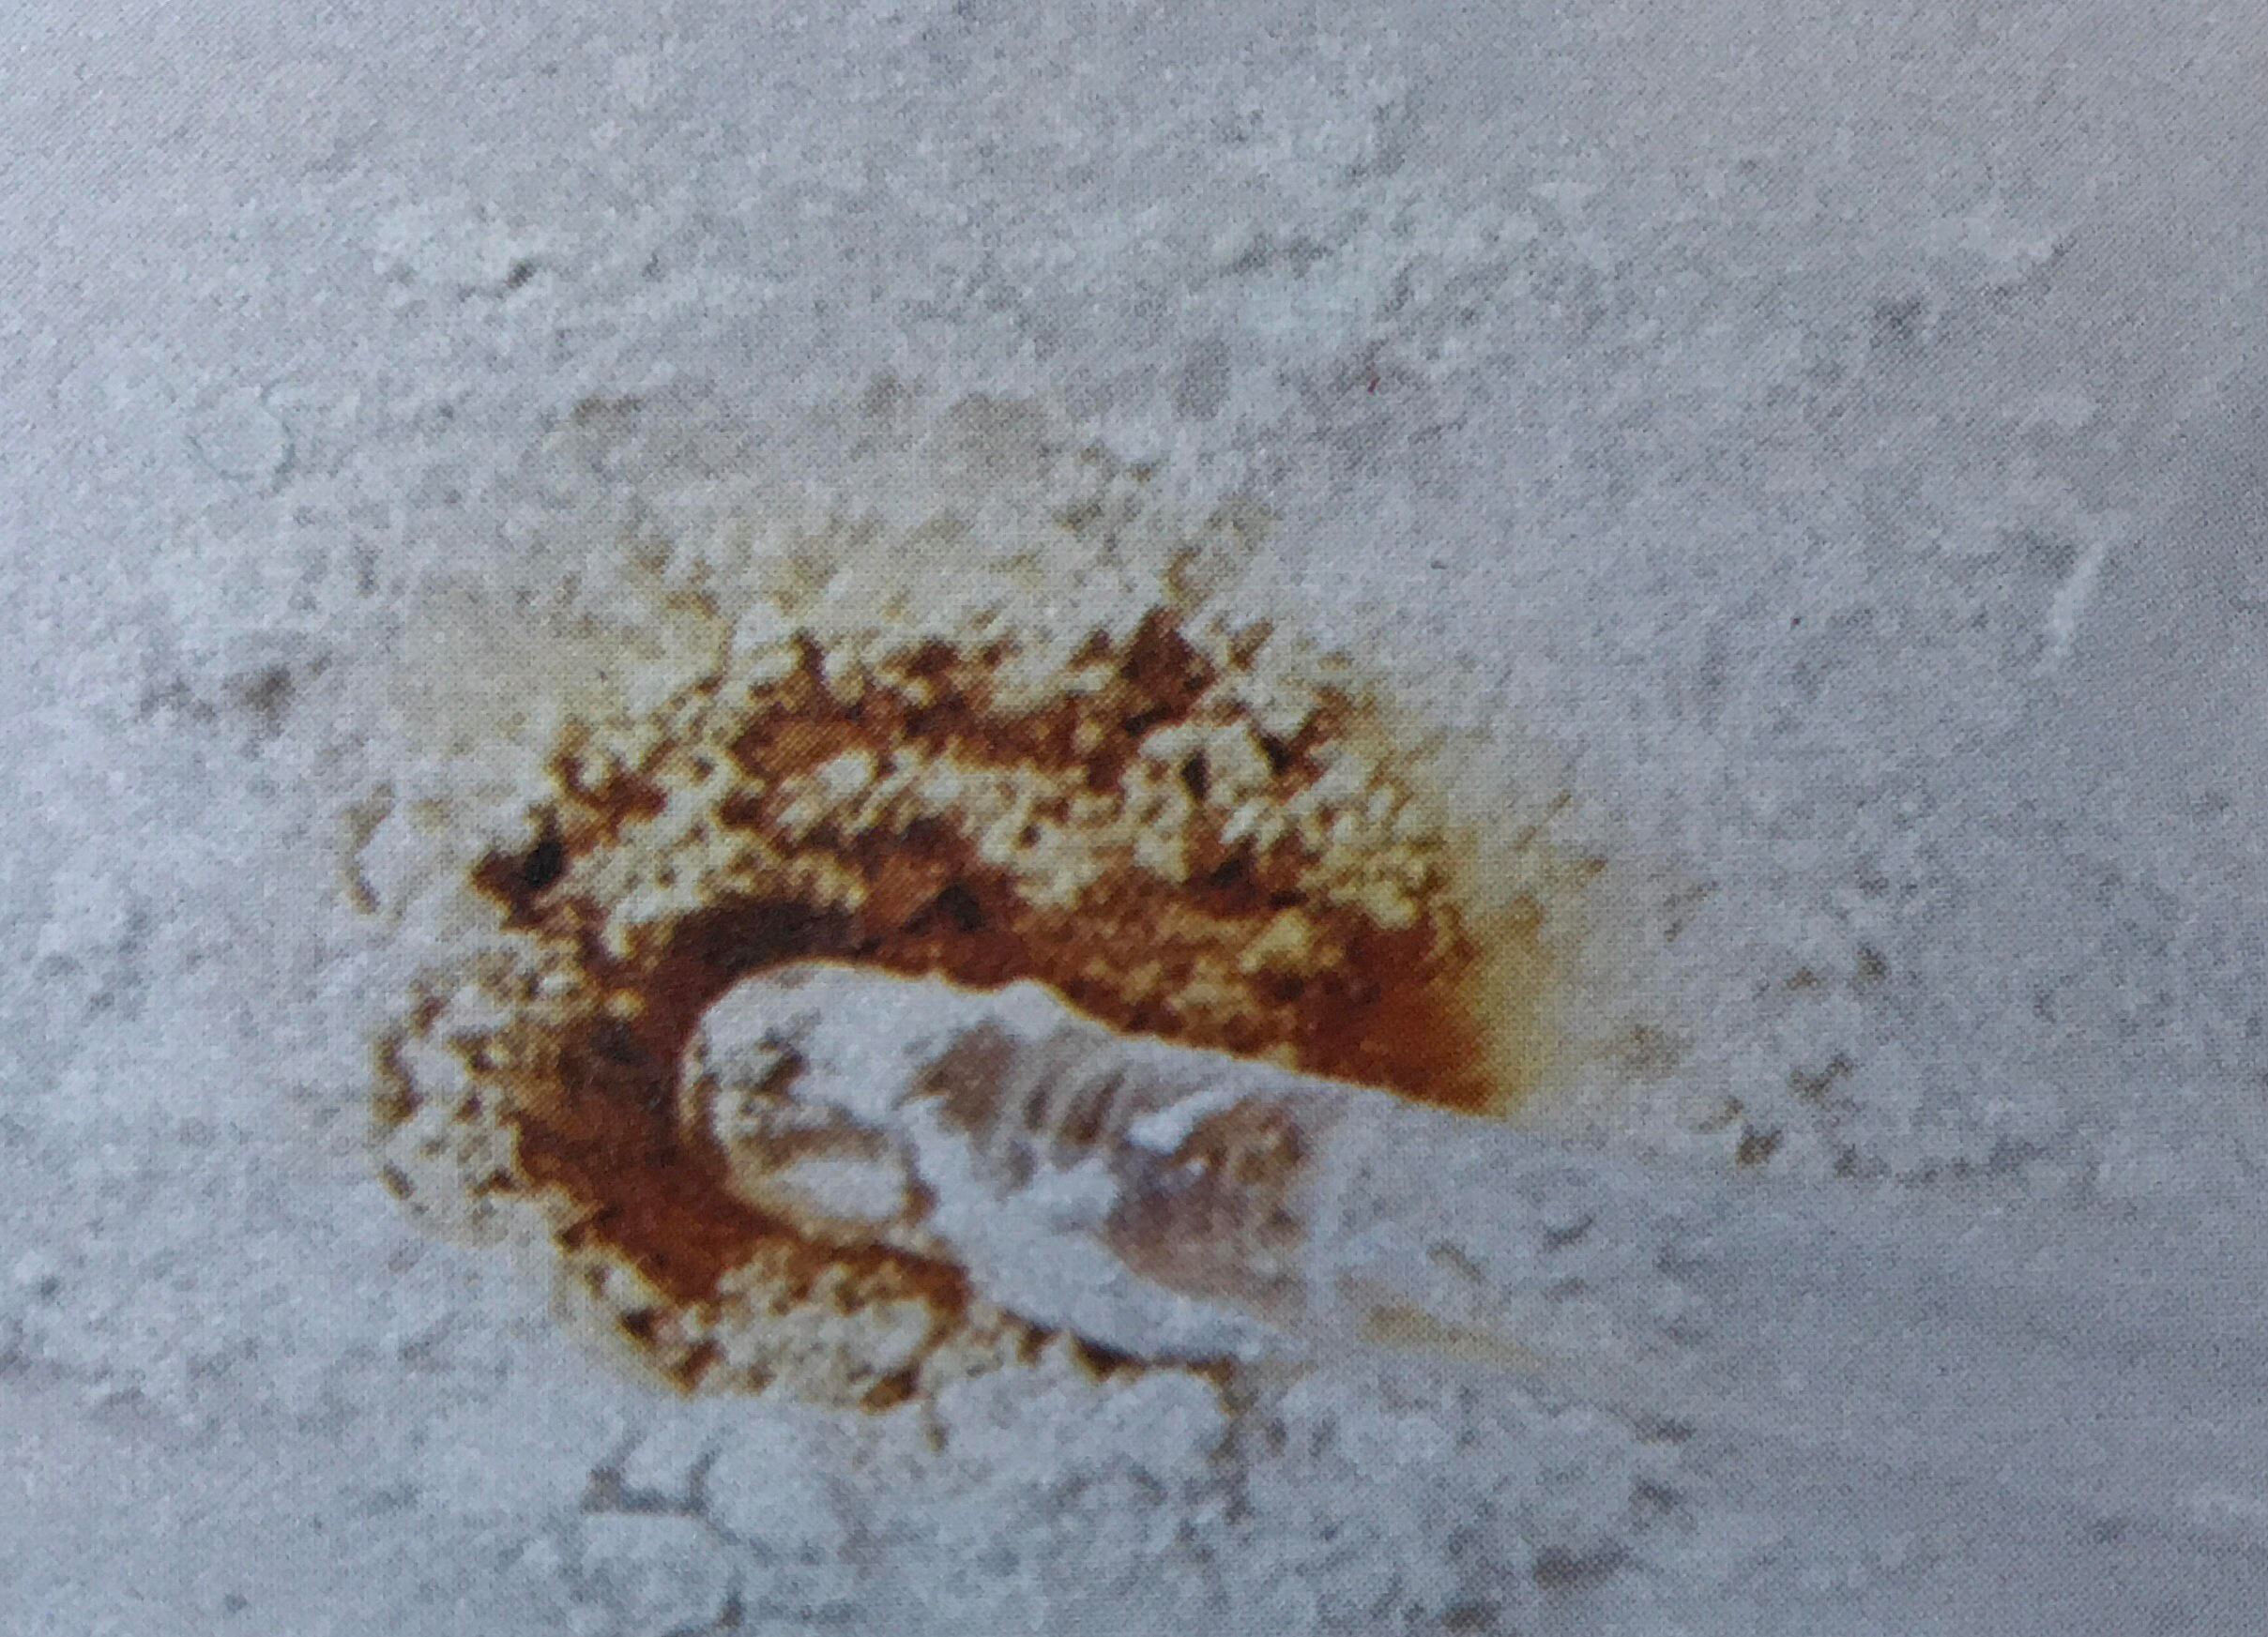 Polvo blanco disperso con residuo circular marrón en el centro.